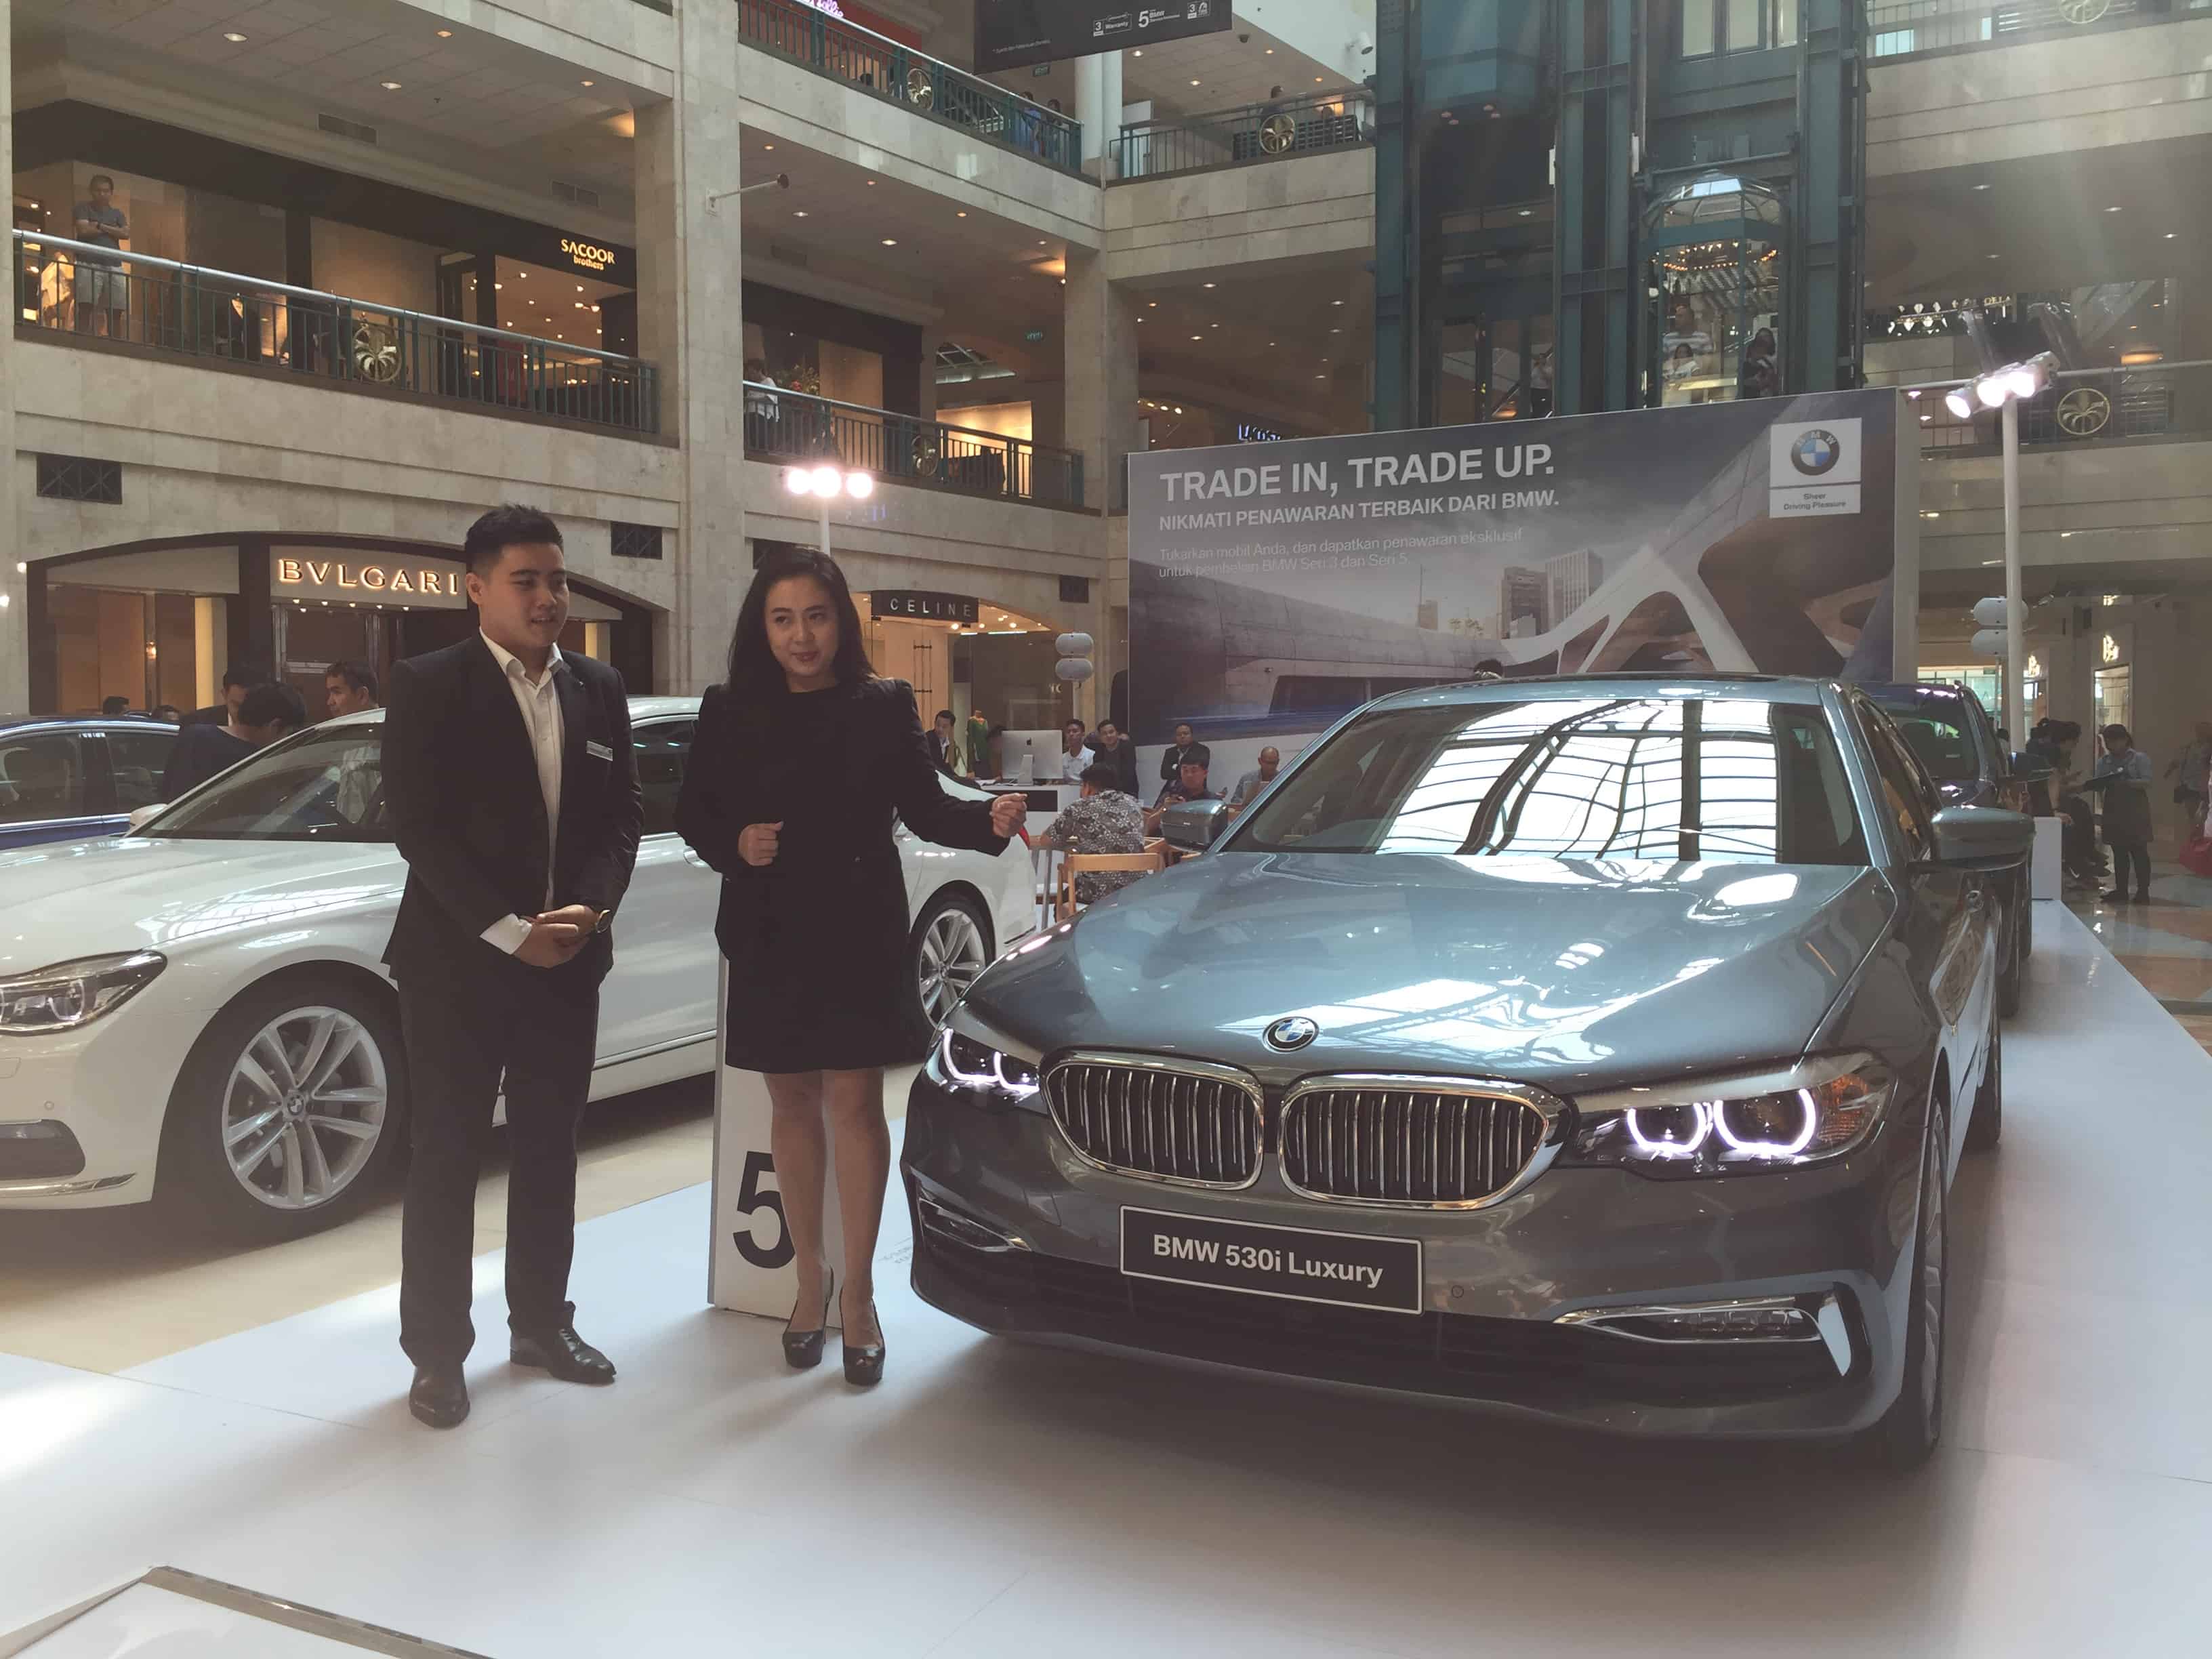 Daftar Dealer  BMW  Yang Terima Tukar Tambah Carvaganza com